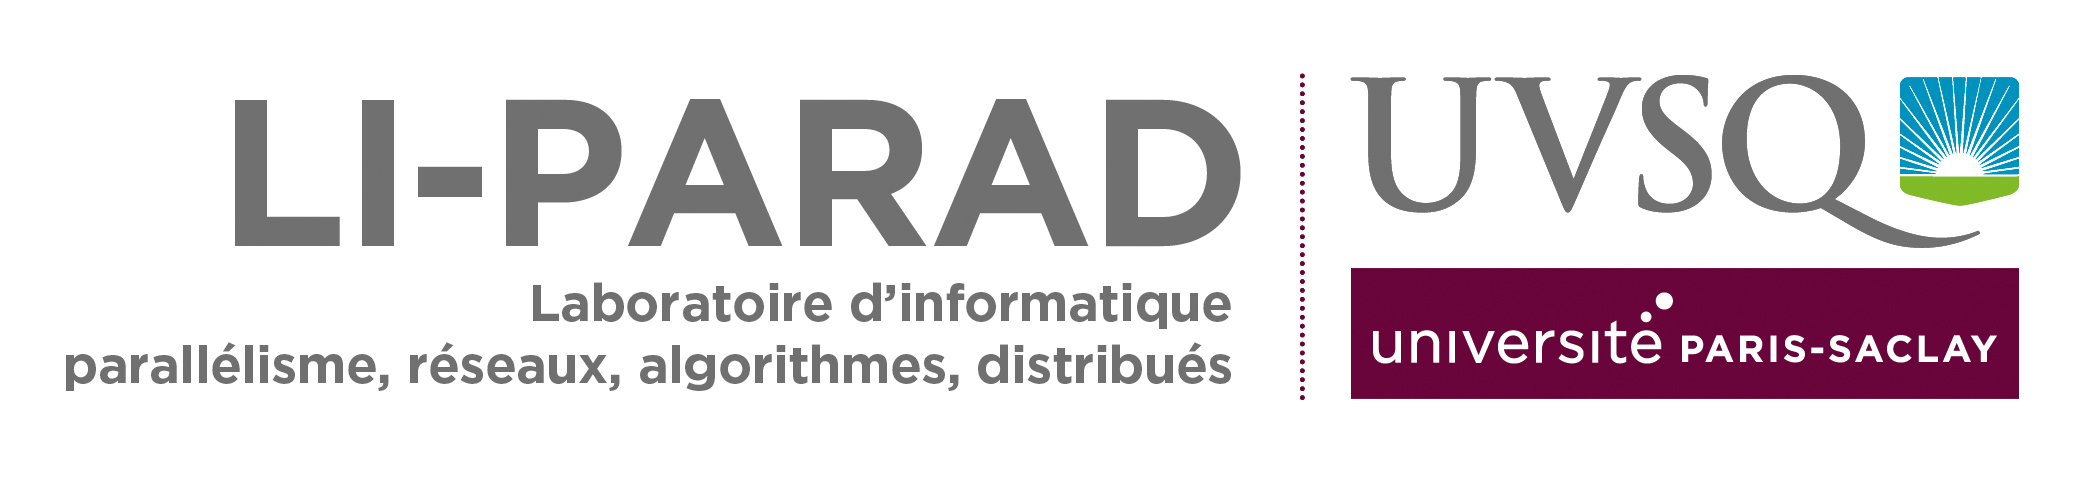 logo-Liparad